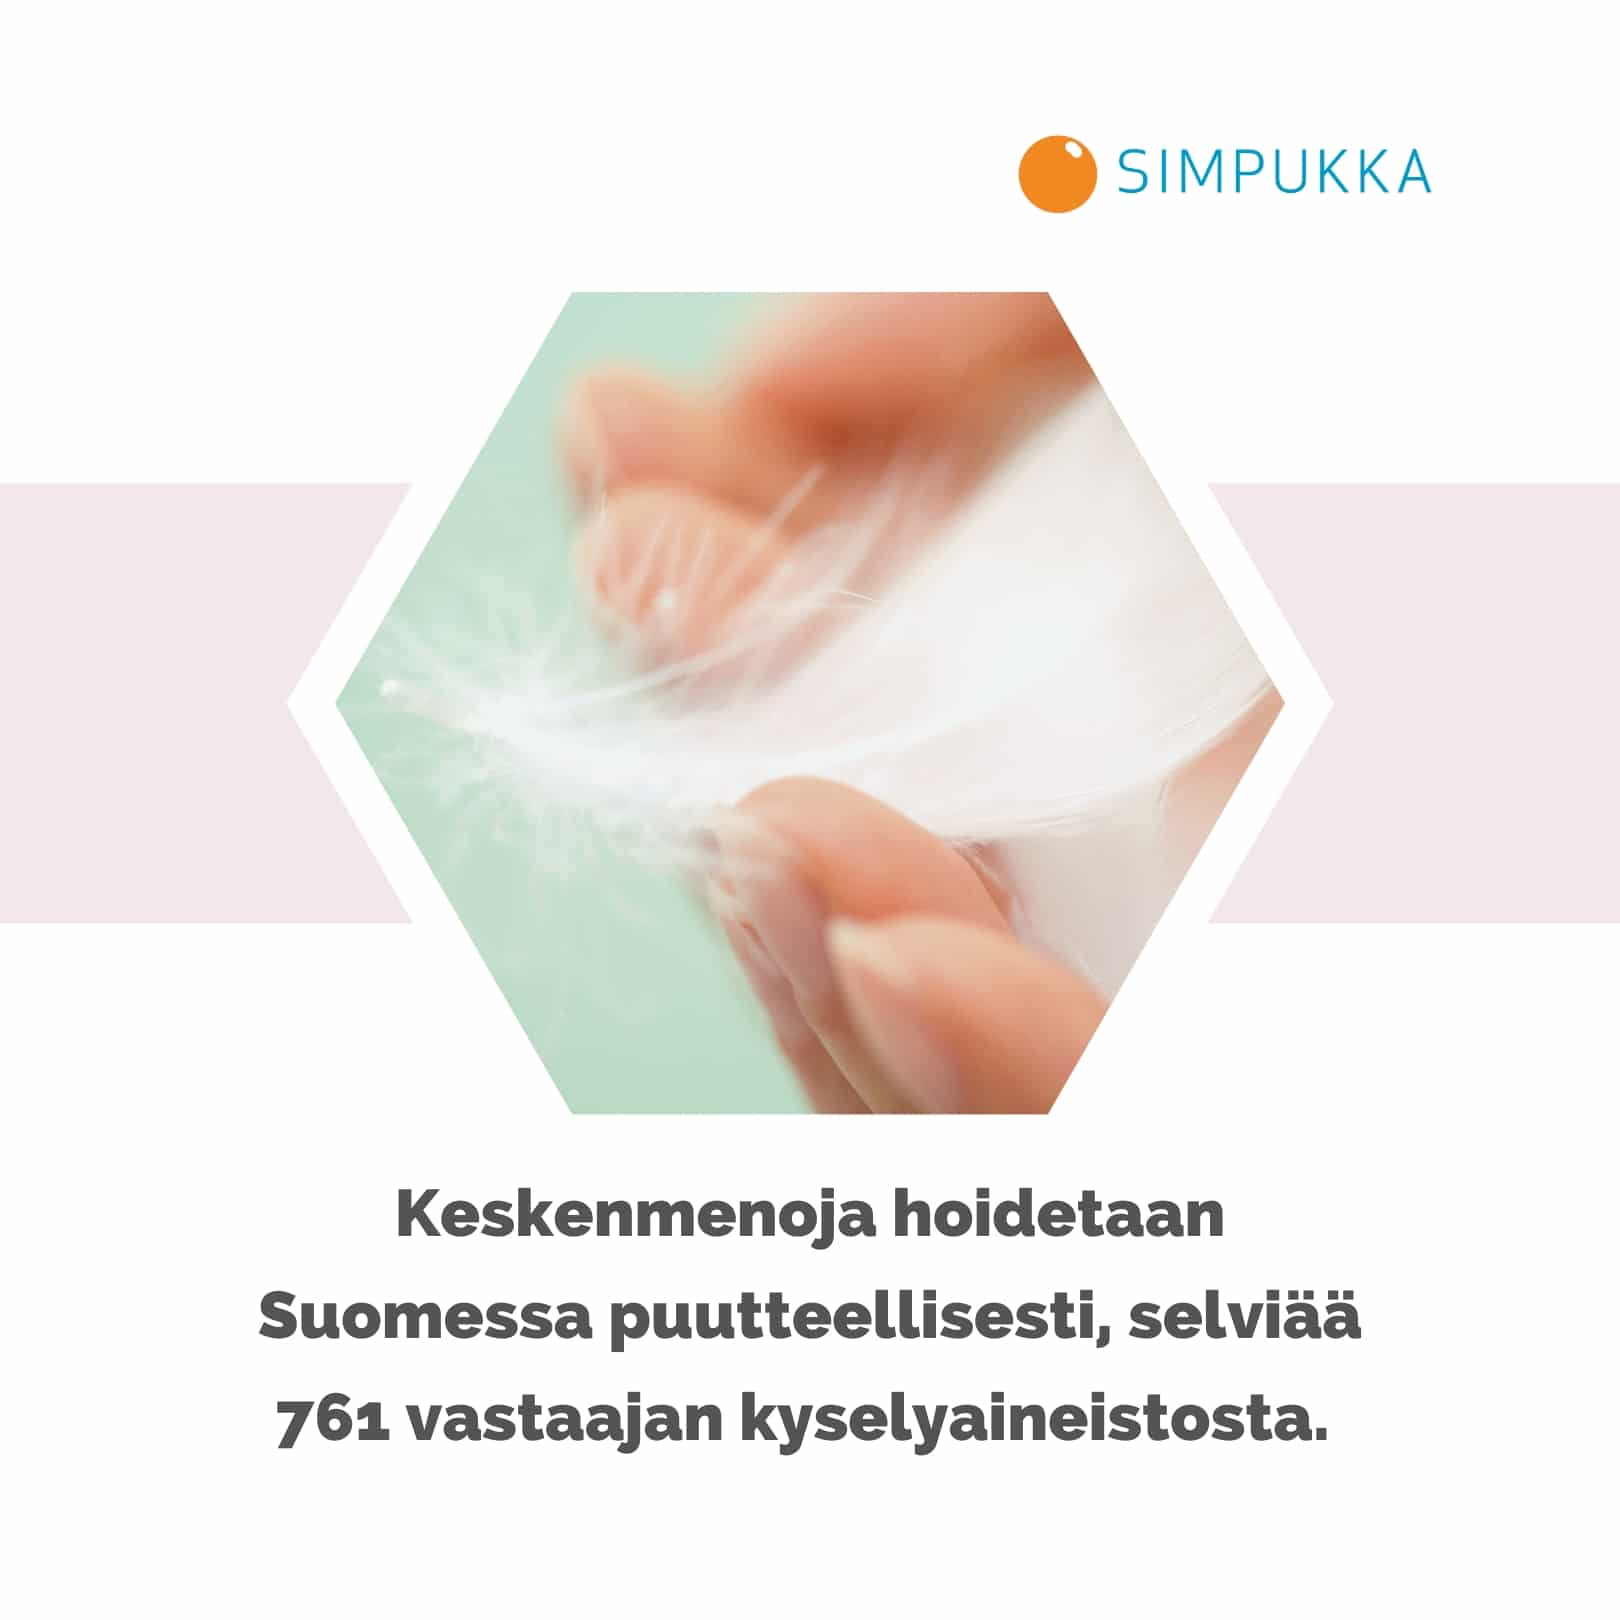 Keskenmenoja hoidetaan Suomessa puutteellisesti, selviää 761 vastaajan kyselyaineistosta. Simpukan logo.